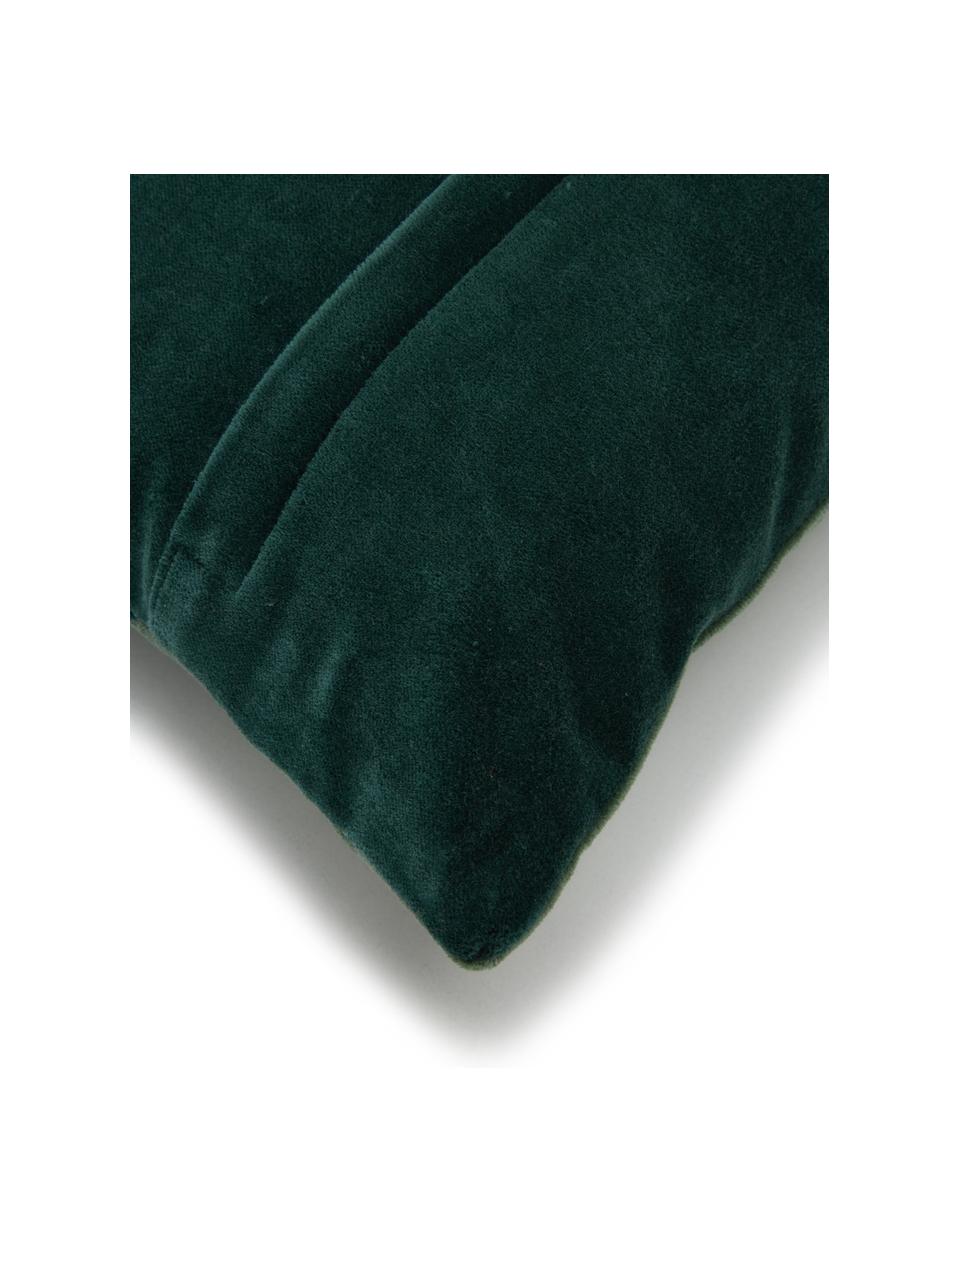 Poduszka z aksamitu z wypełnieniem Patchwork, Tapicerka: 100% aksamit bawełniany, Odcienie zielonego, S 30 x D 50 cm